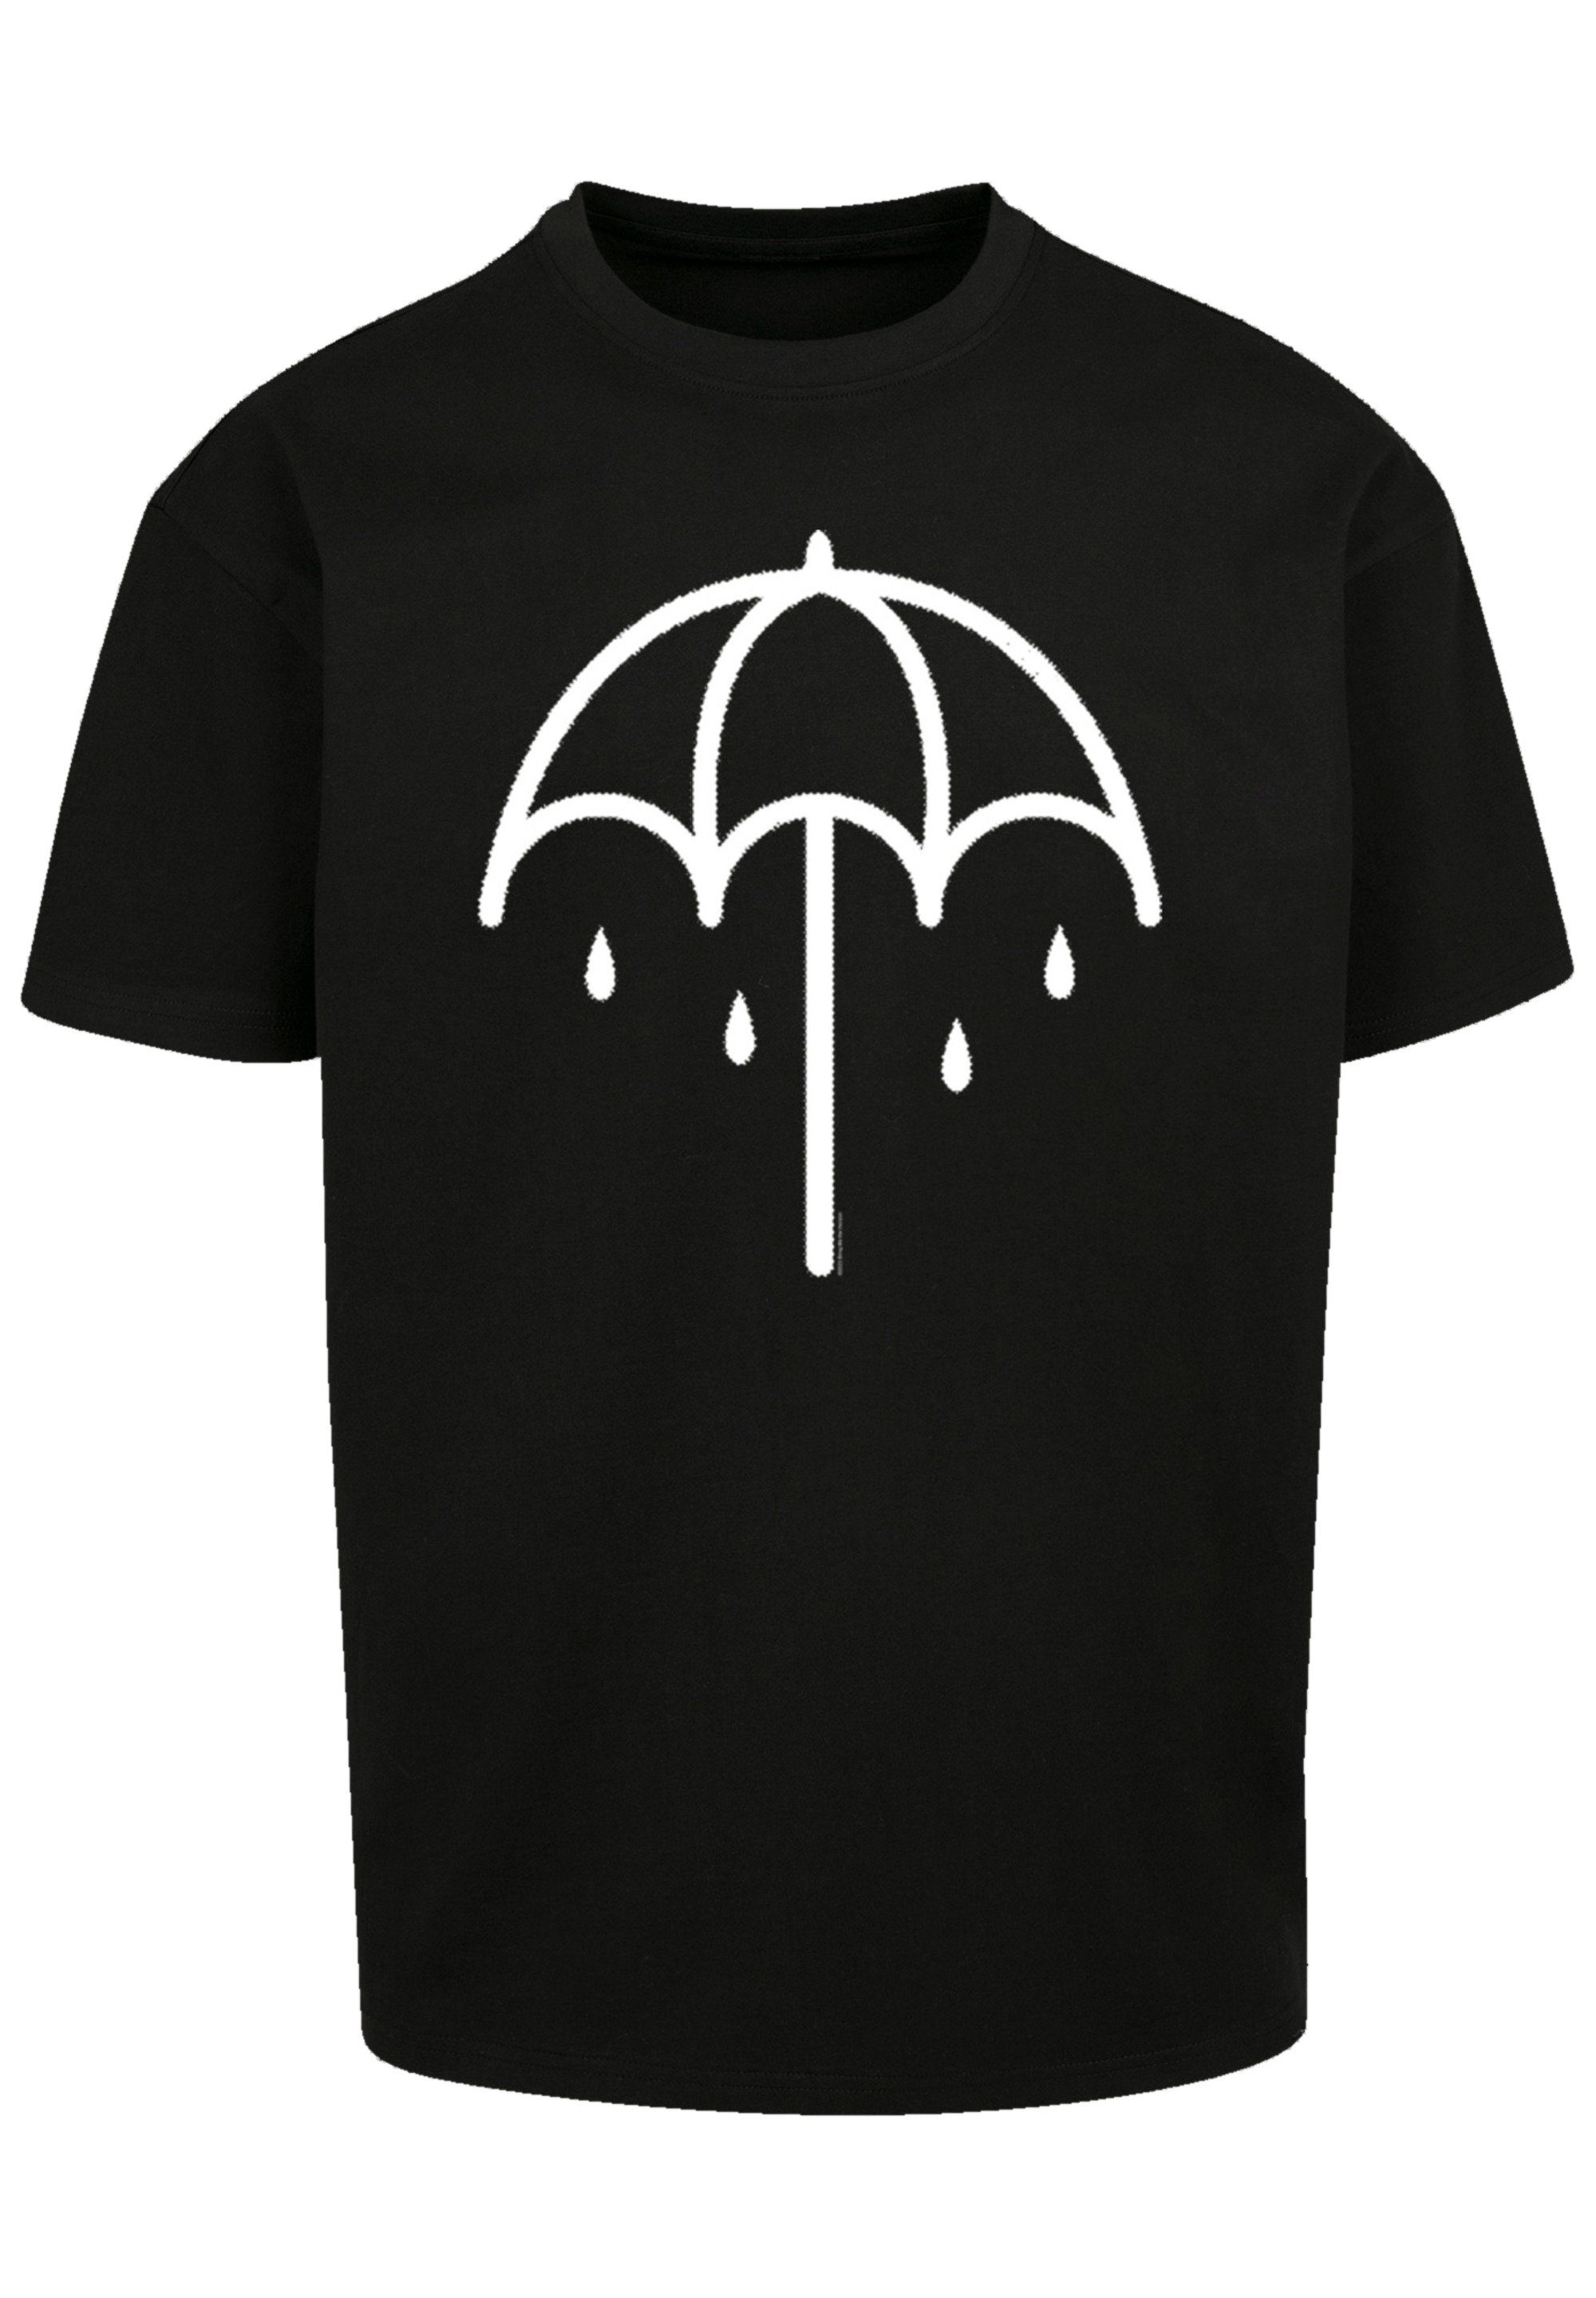 Metal Premium 2 Rock-Musik, Band DARK Umbrella Qualität, Band schwarz F4NT4STIC T-Shirt BMTH